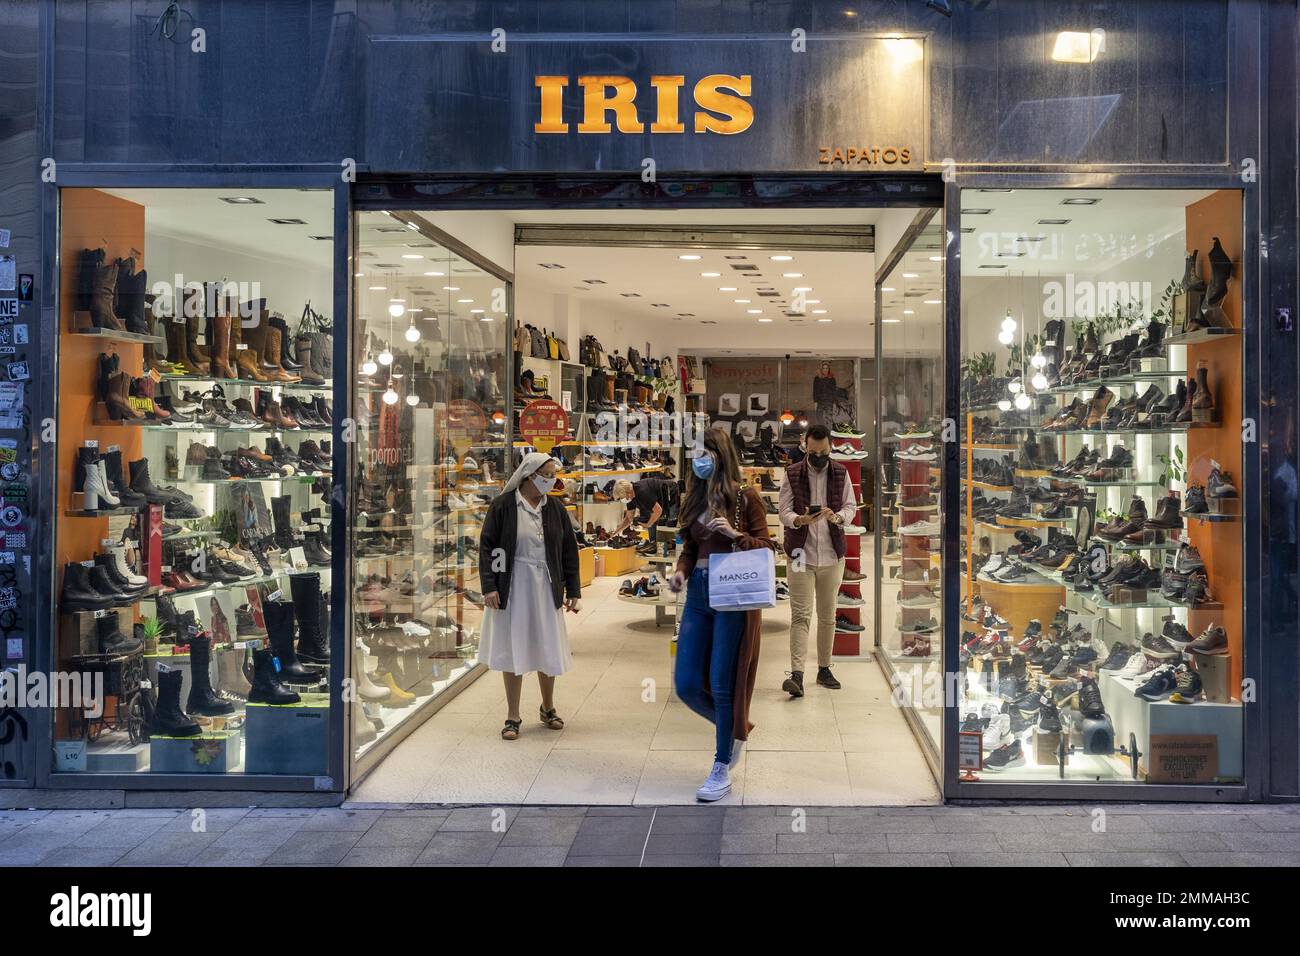 Spain madrid shoe shop immagini e fotografie stock ad alta risoluzione -  Alamy